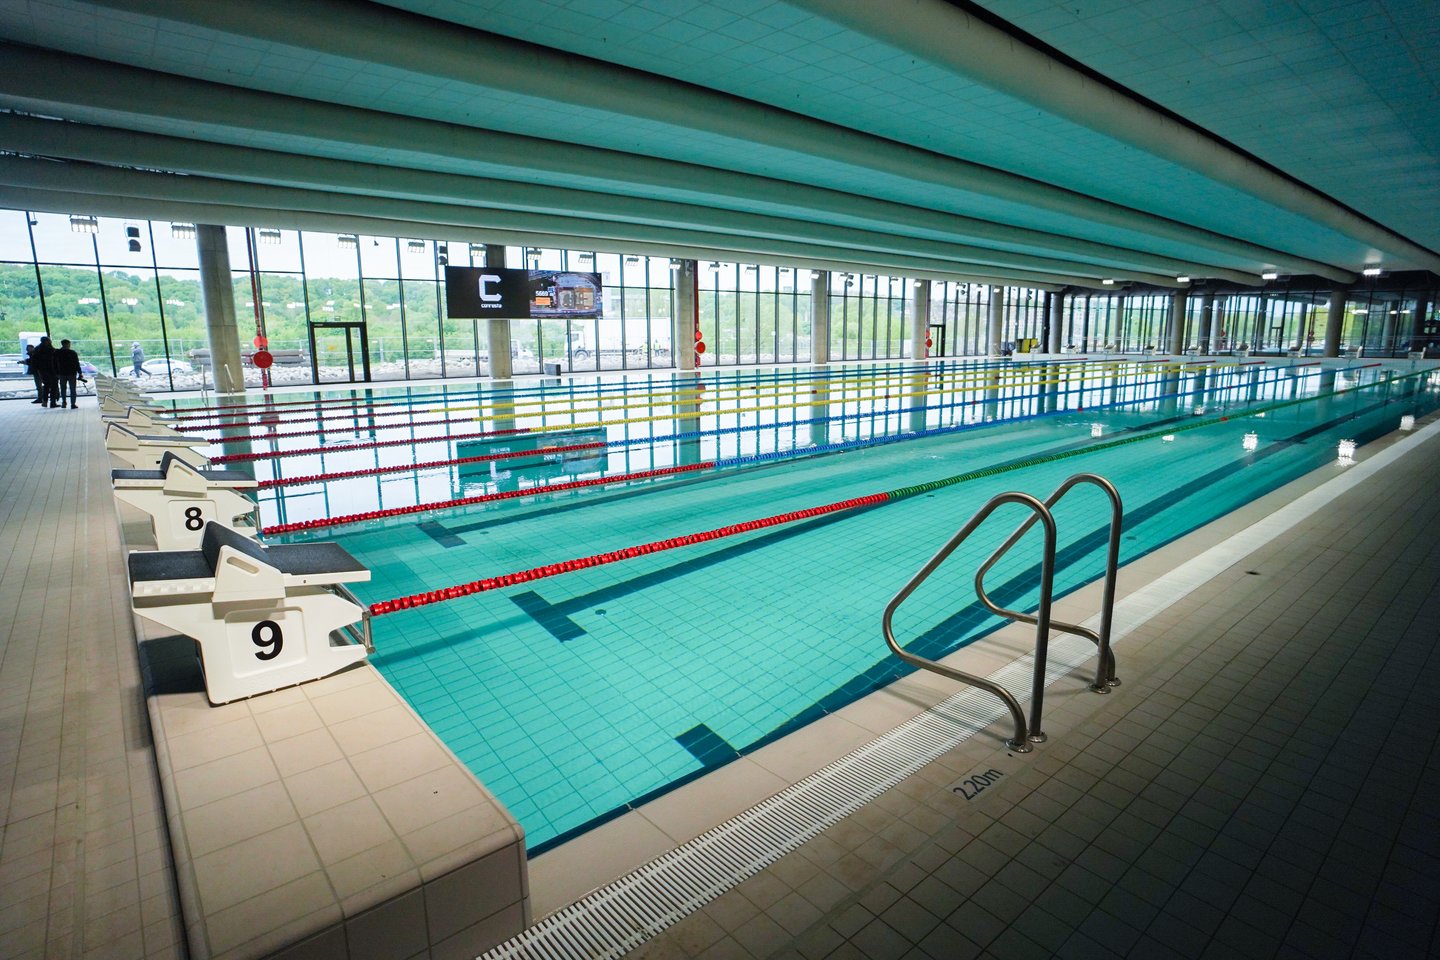 50 metrų ilgio baseinas suteiks Kaunui galimybę rengti pačias svarbiausias pasaulio vandens sporto varžybas. <br> G.Bitvinsko nuotr.